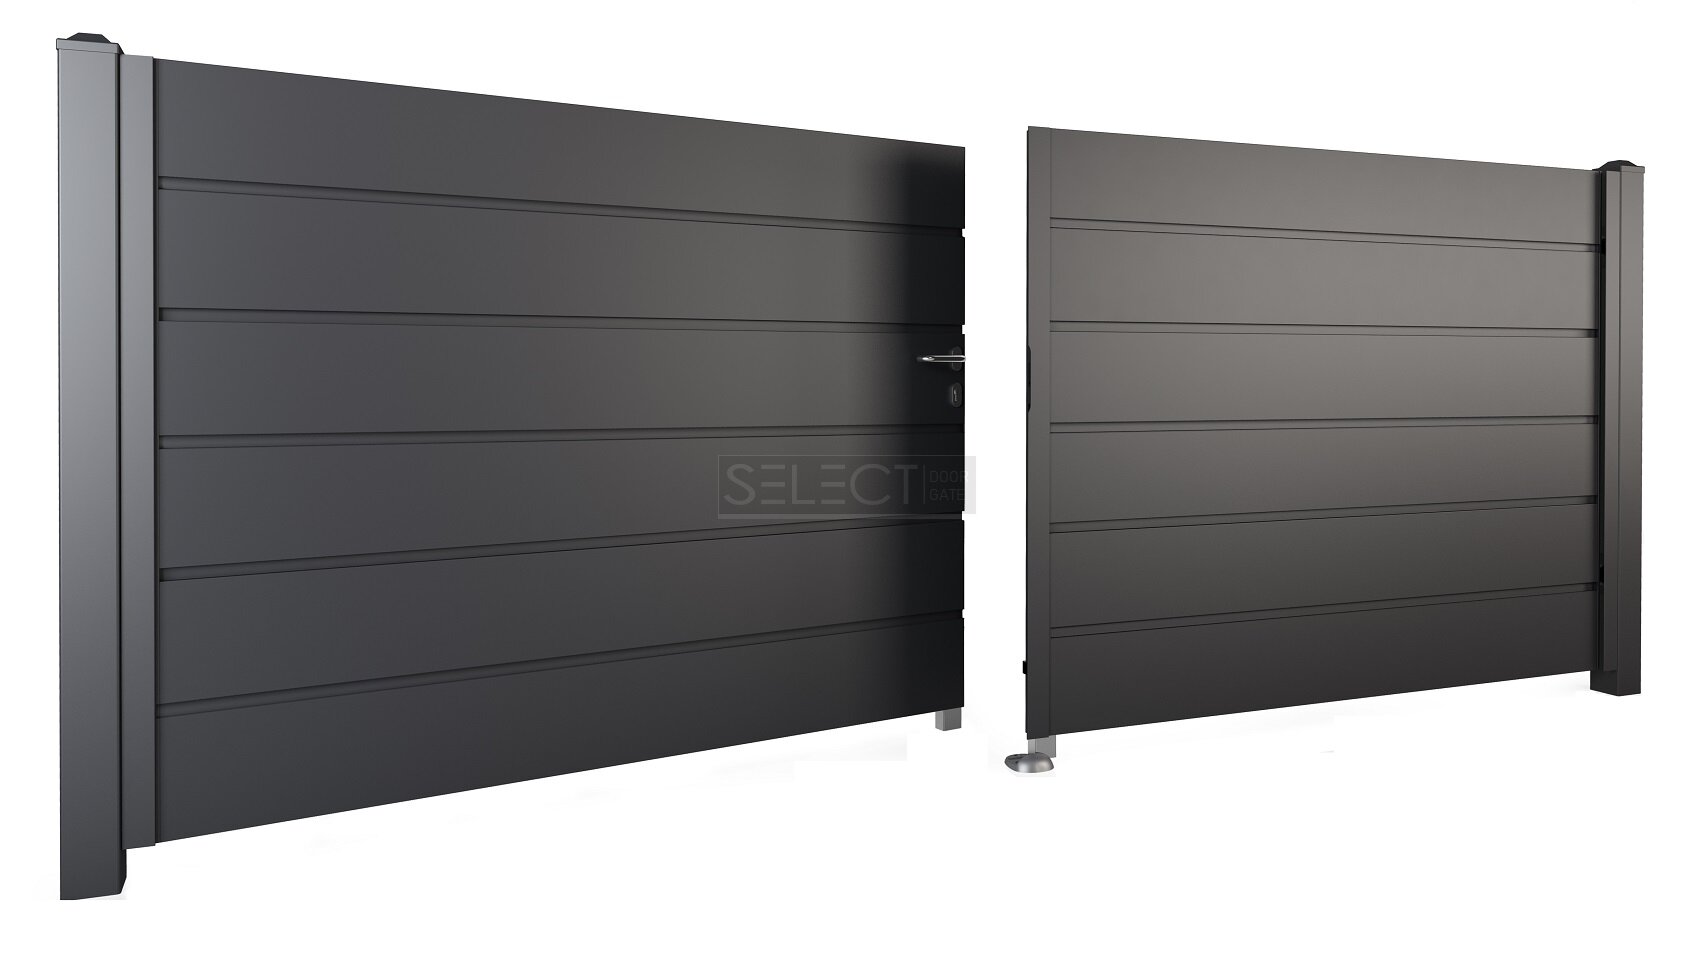 Оцинкованные металлические ворота распашного типа от завода производителя SELECT серия Panel